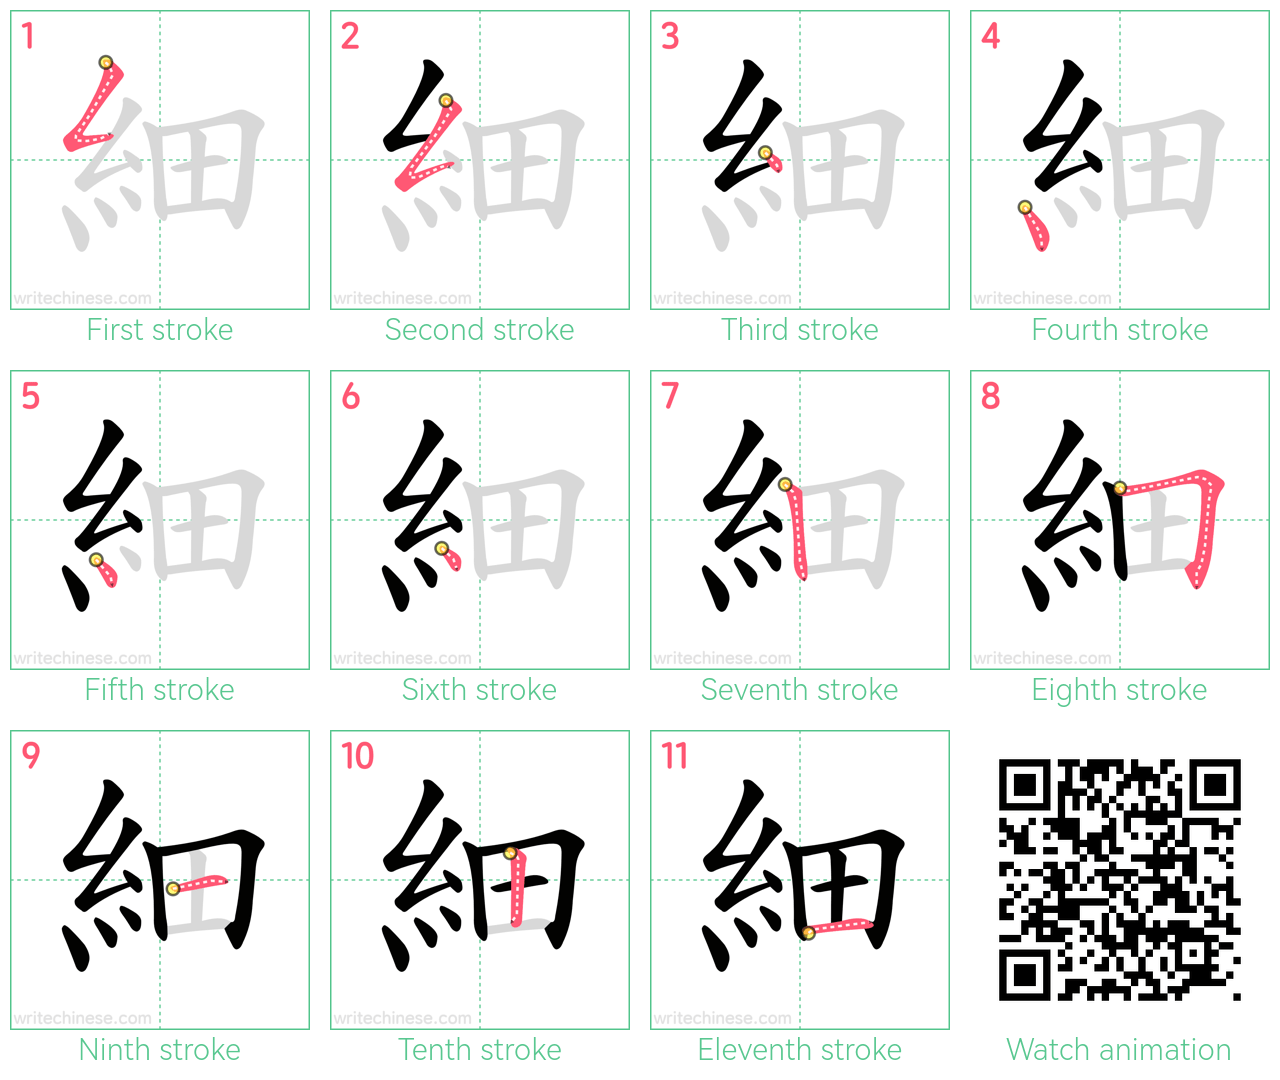 細 step-by-step stroke order diagrams